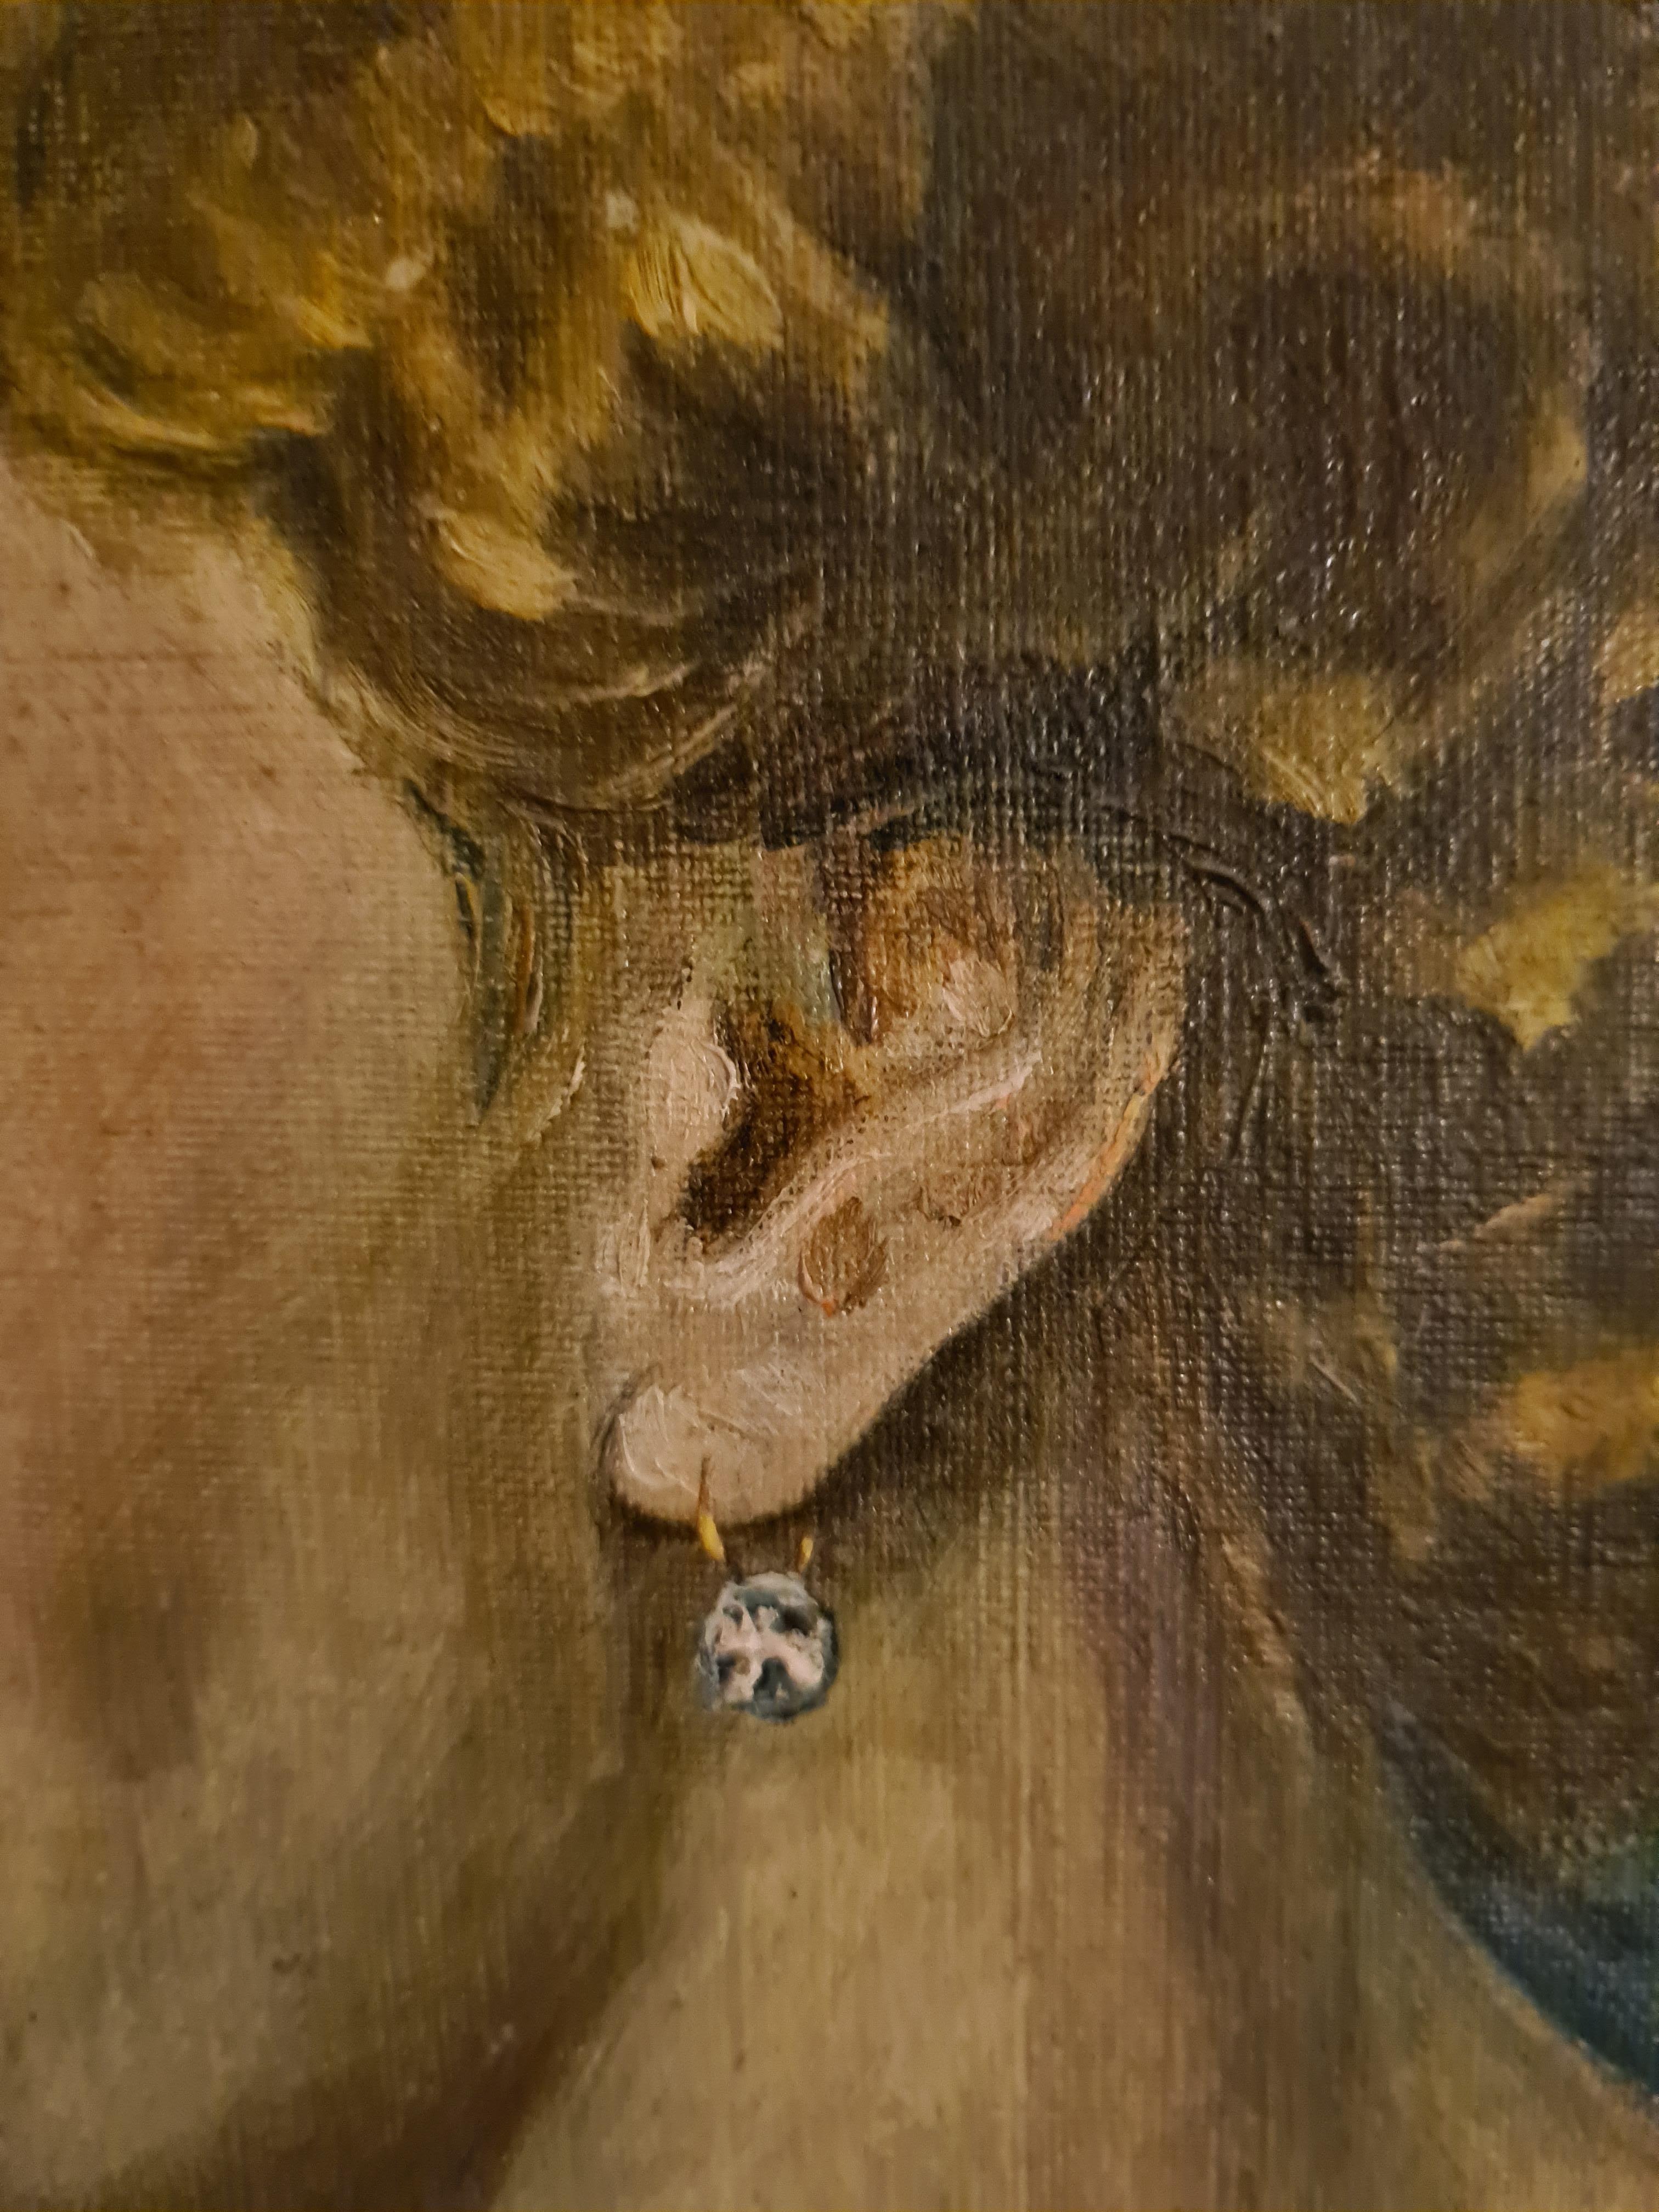 Art déco français, huile sur toile, portrait de femme de la société par Dembinkski (probablement Anton J.) Signé, daté et situé (Paris) en bas à gauche. Dans un cadre en bois et doré.

Portrait charmant et élégant d'une beauté mondaine parisienne de